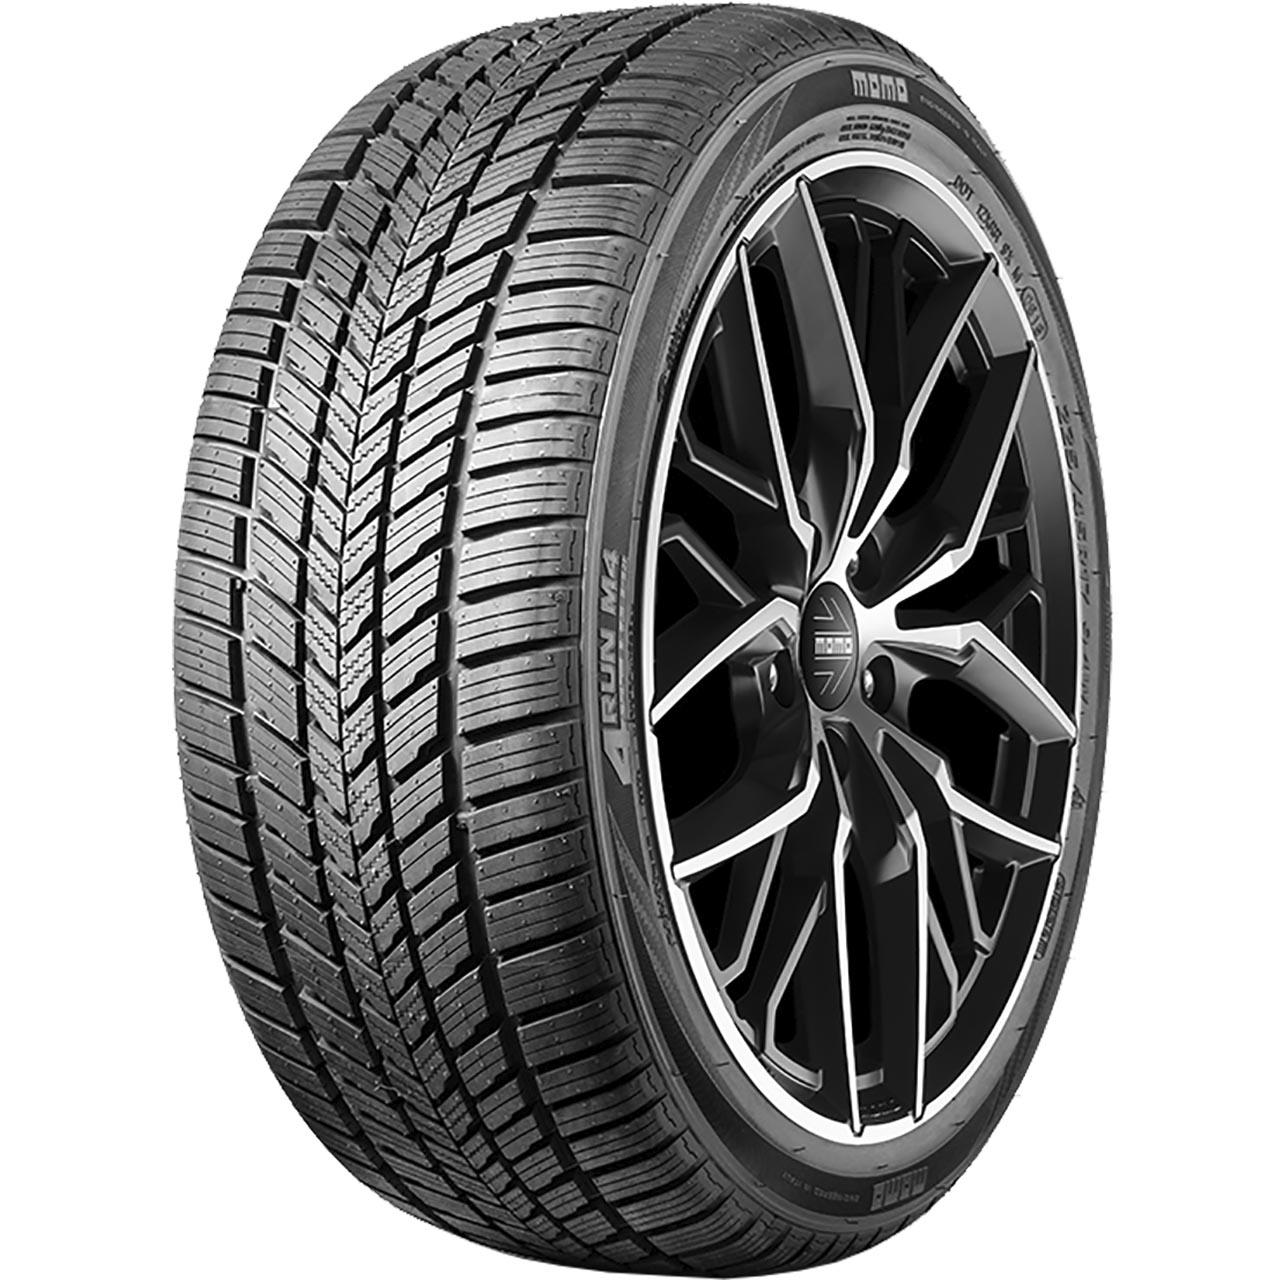 Momo Tire M 4 Four Season 225/50R18 99V XL